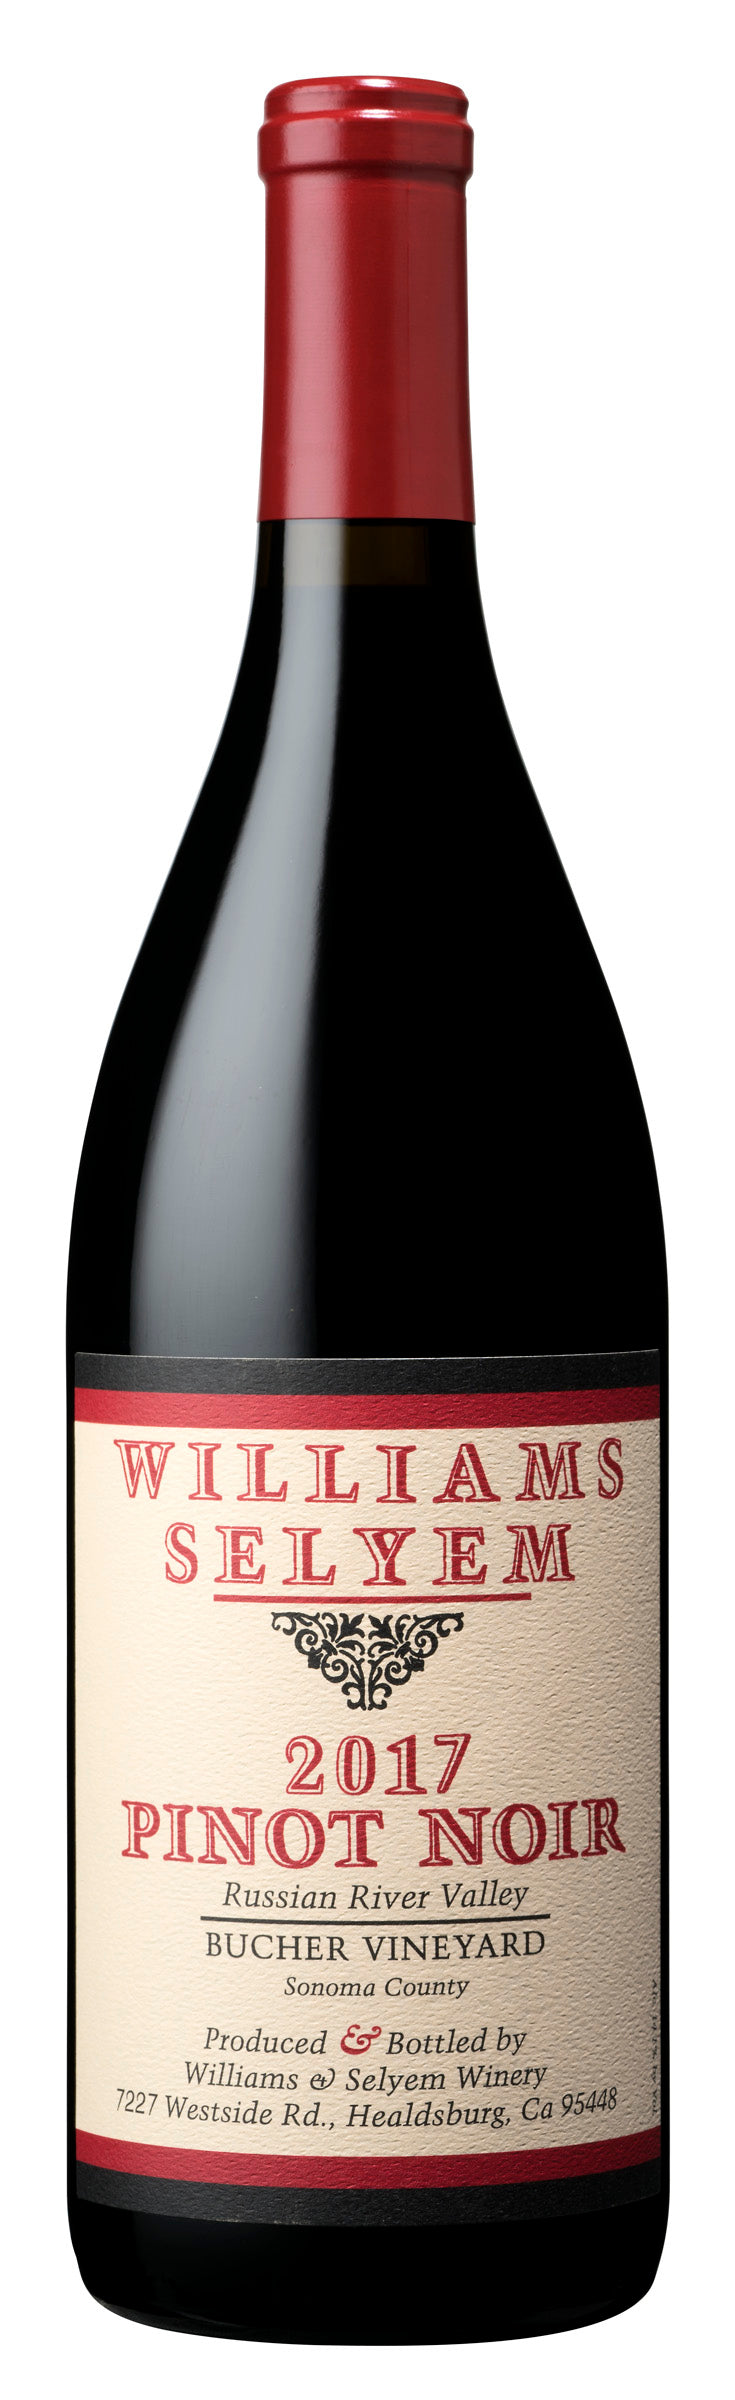 2017 Williams Selyem Pinot Noir Bucher Vineyard